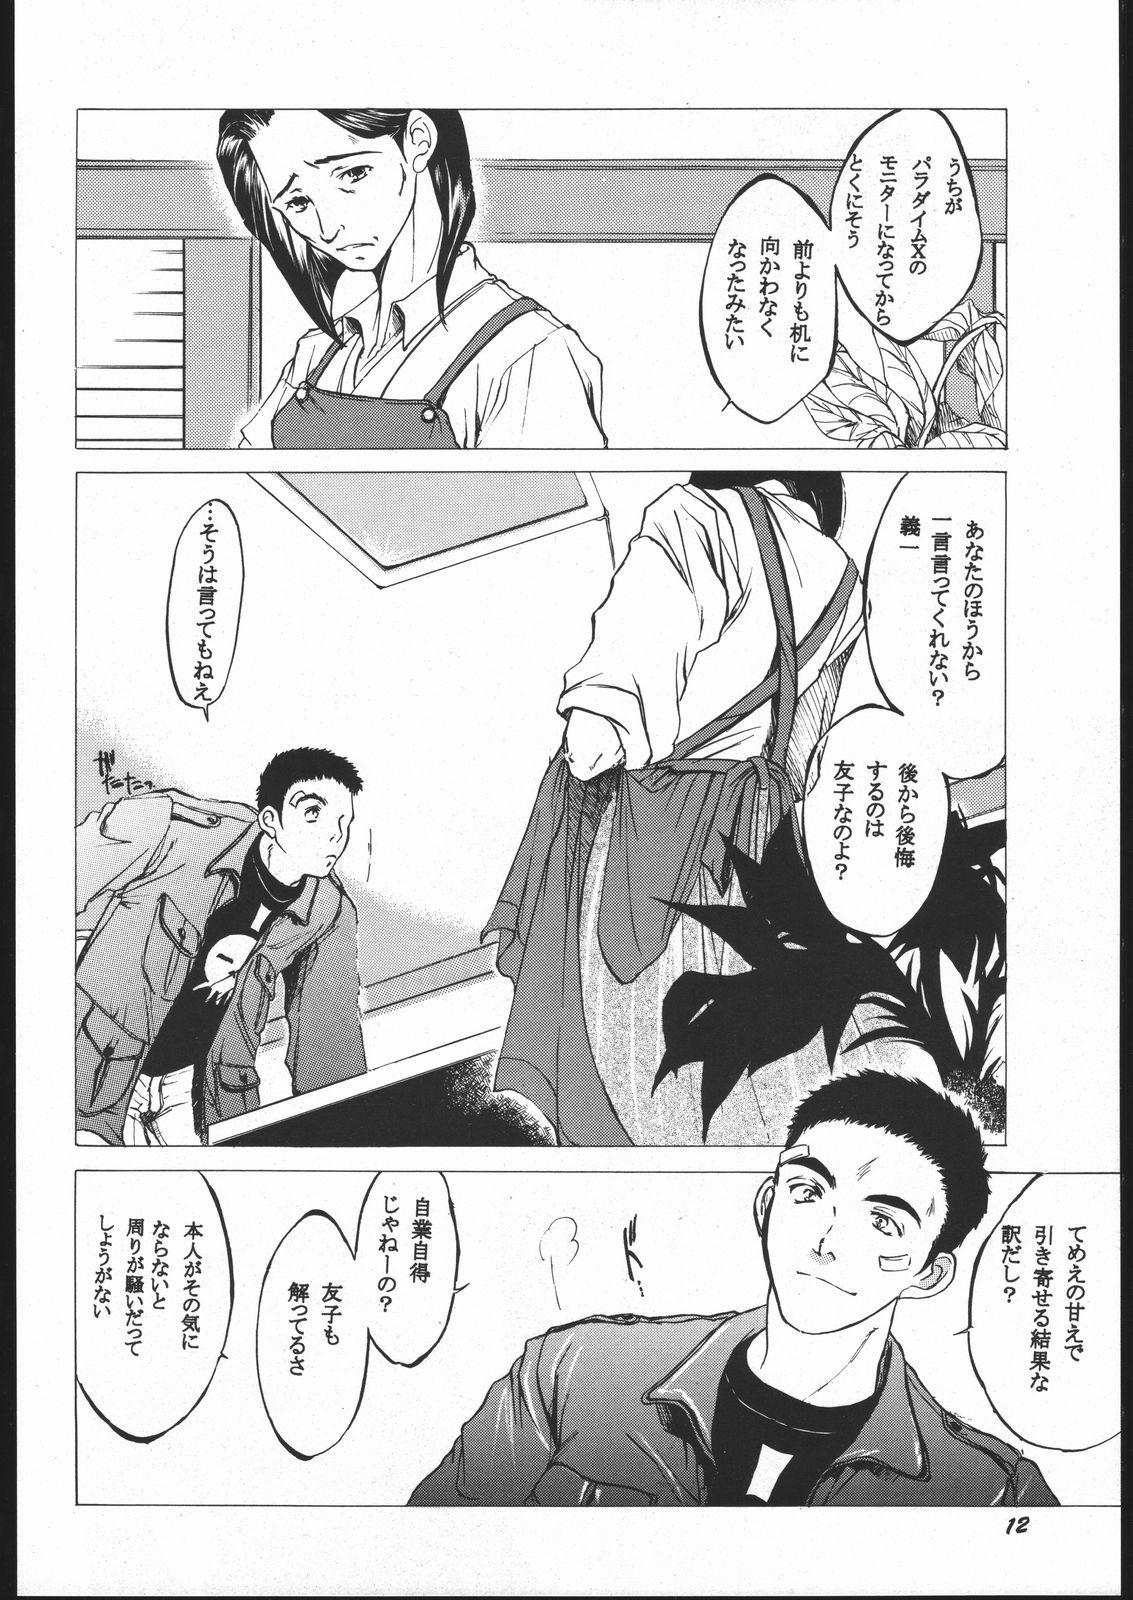 Cop Toko - Shin megami tensei Devil summoner soul hackers Flaca - Page 11